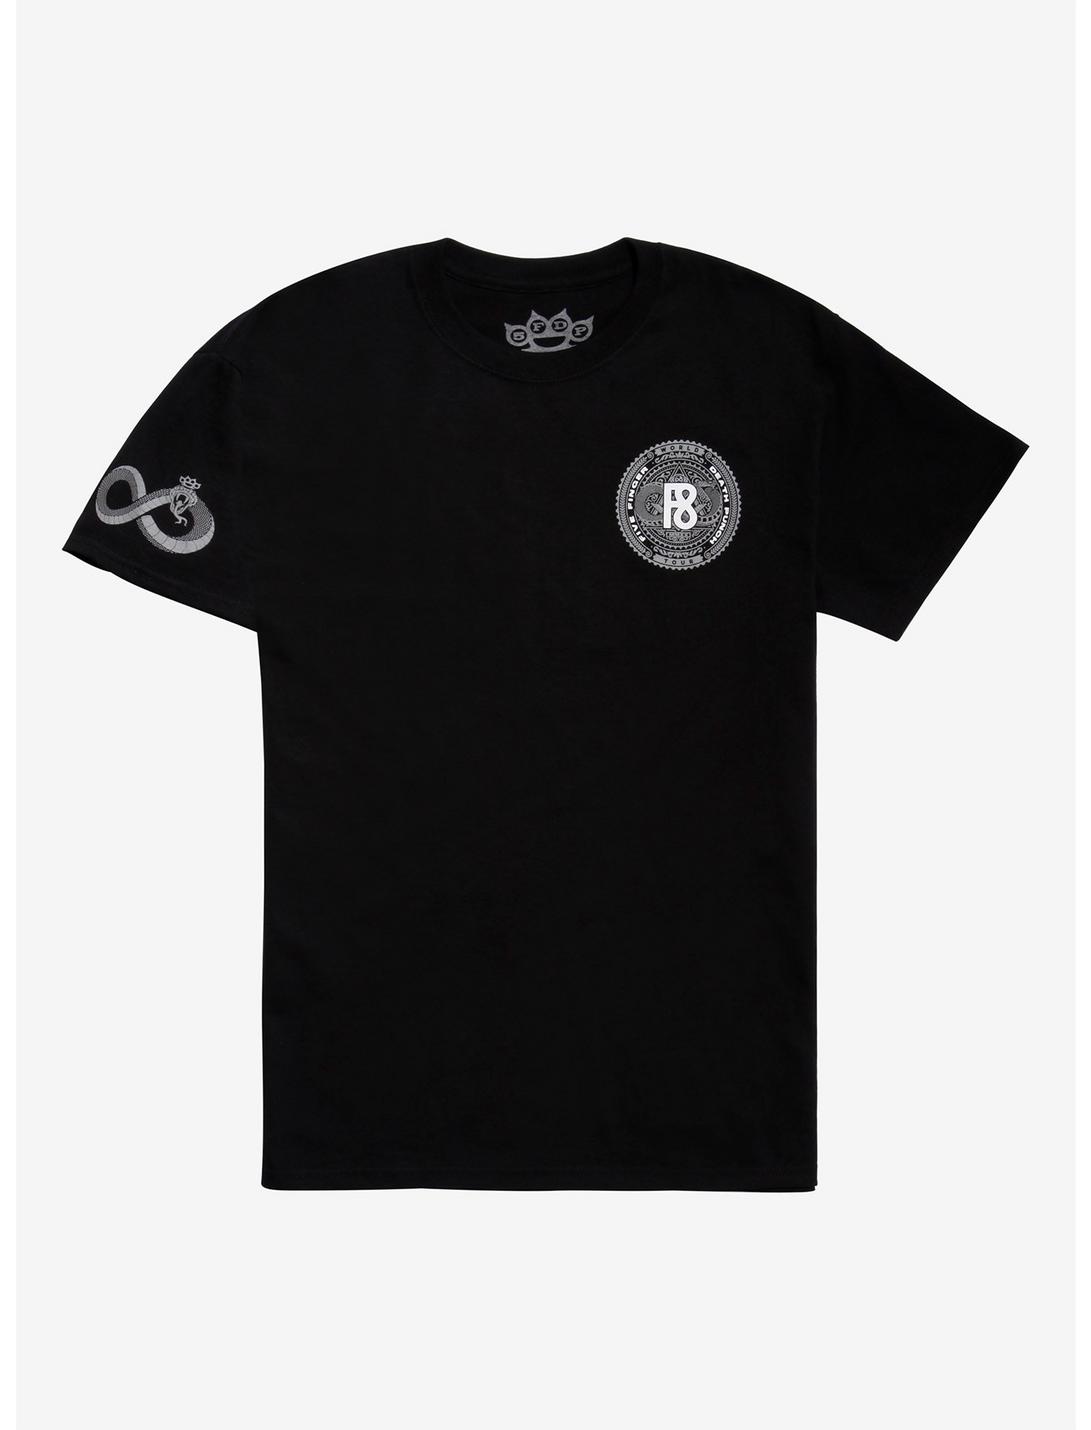 Five Finger Death Punch F8 T-Shirt, BLACK, hi-res